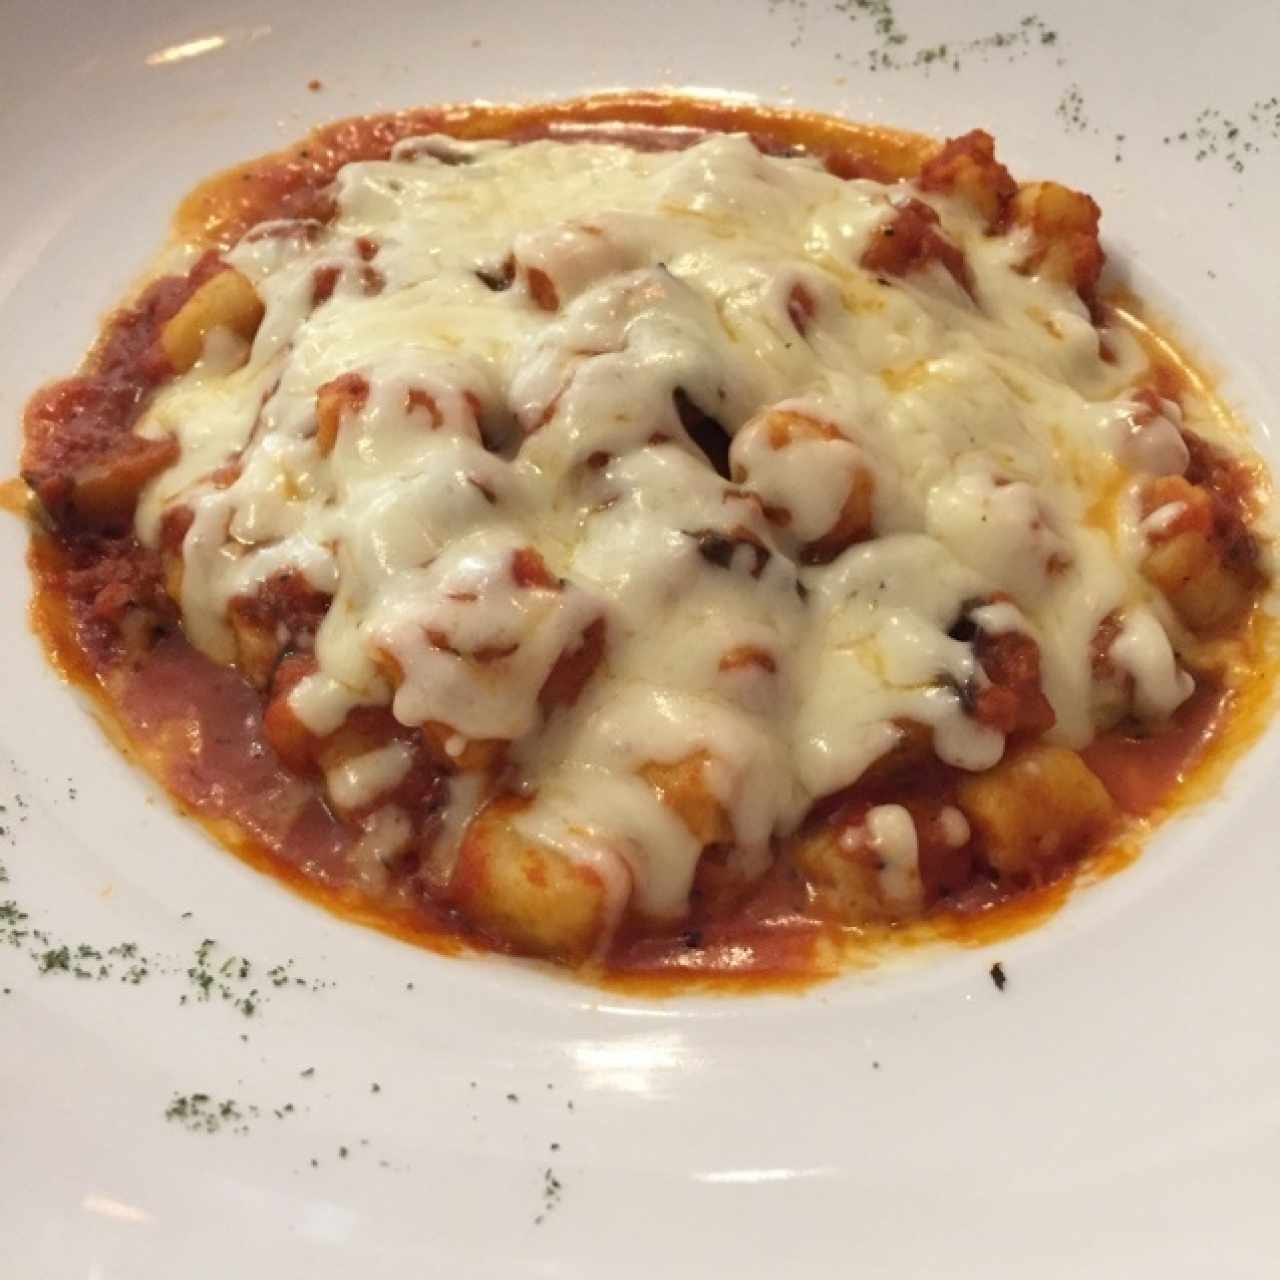 gnocchi con berenjenas , salsa pomodoro y mozzarella gratinado